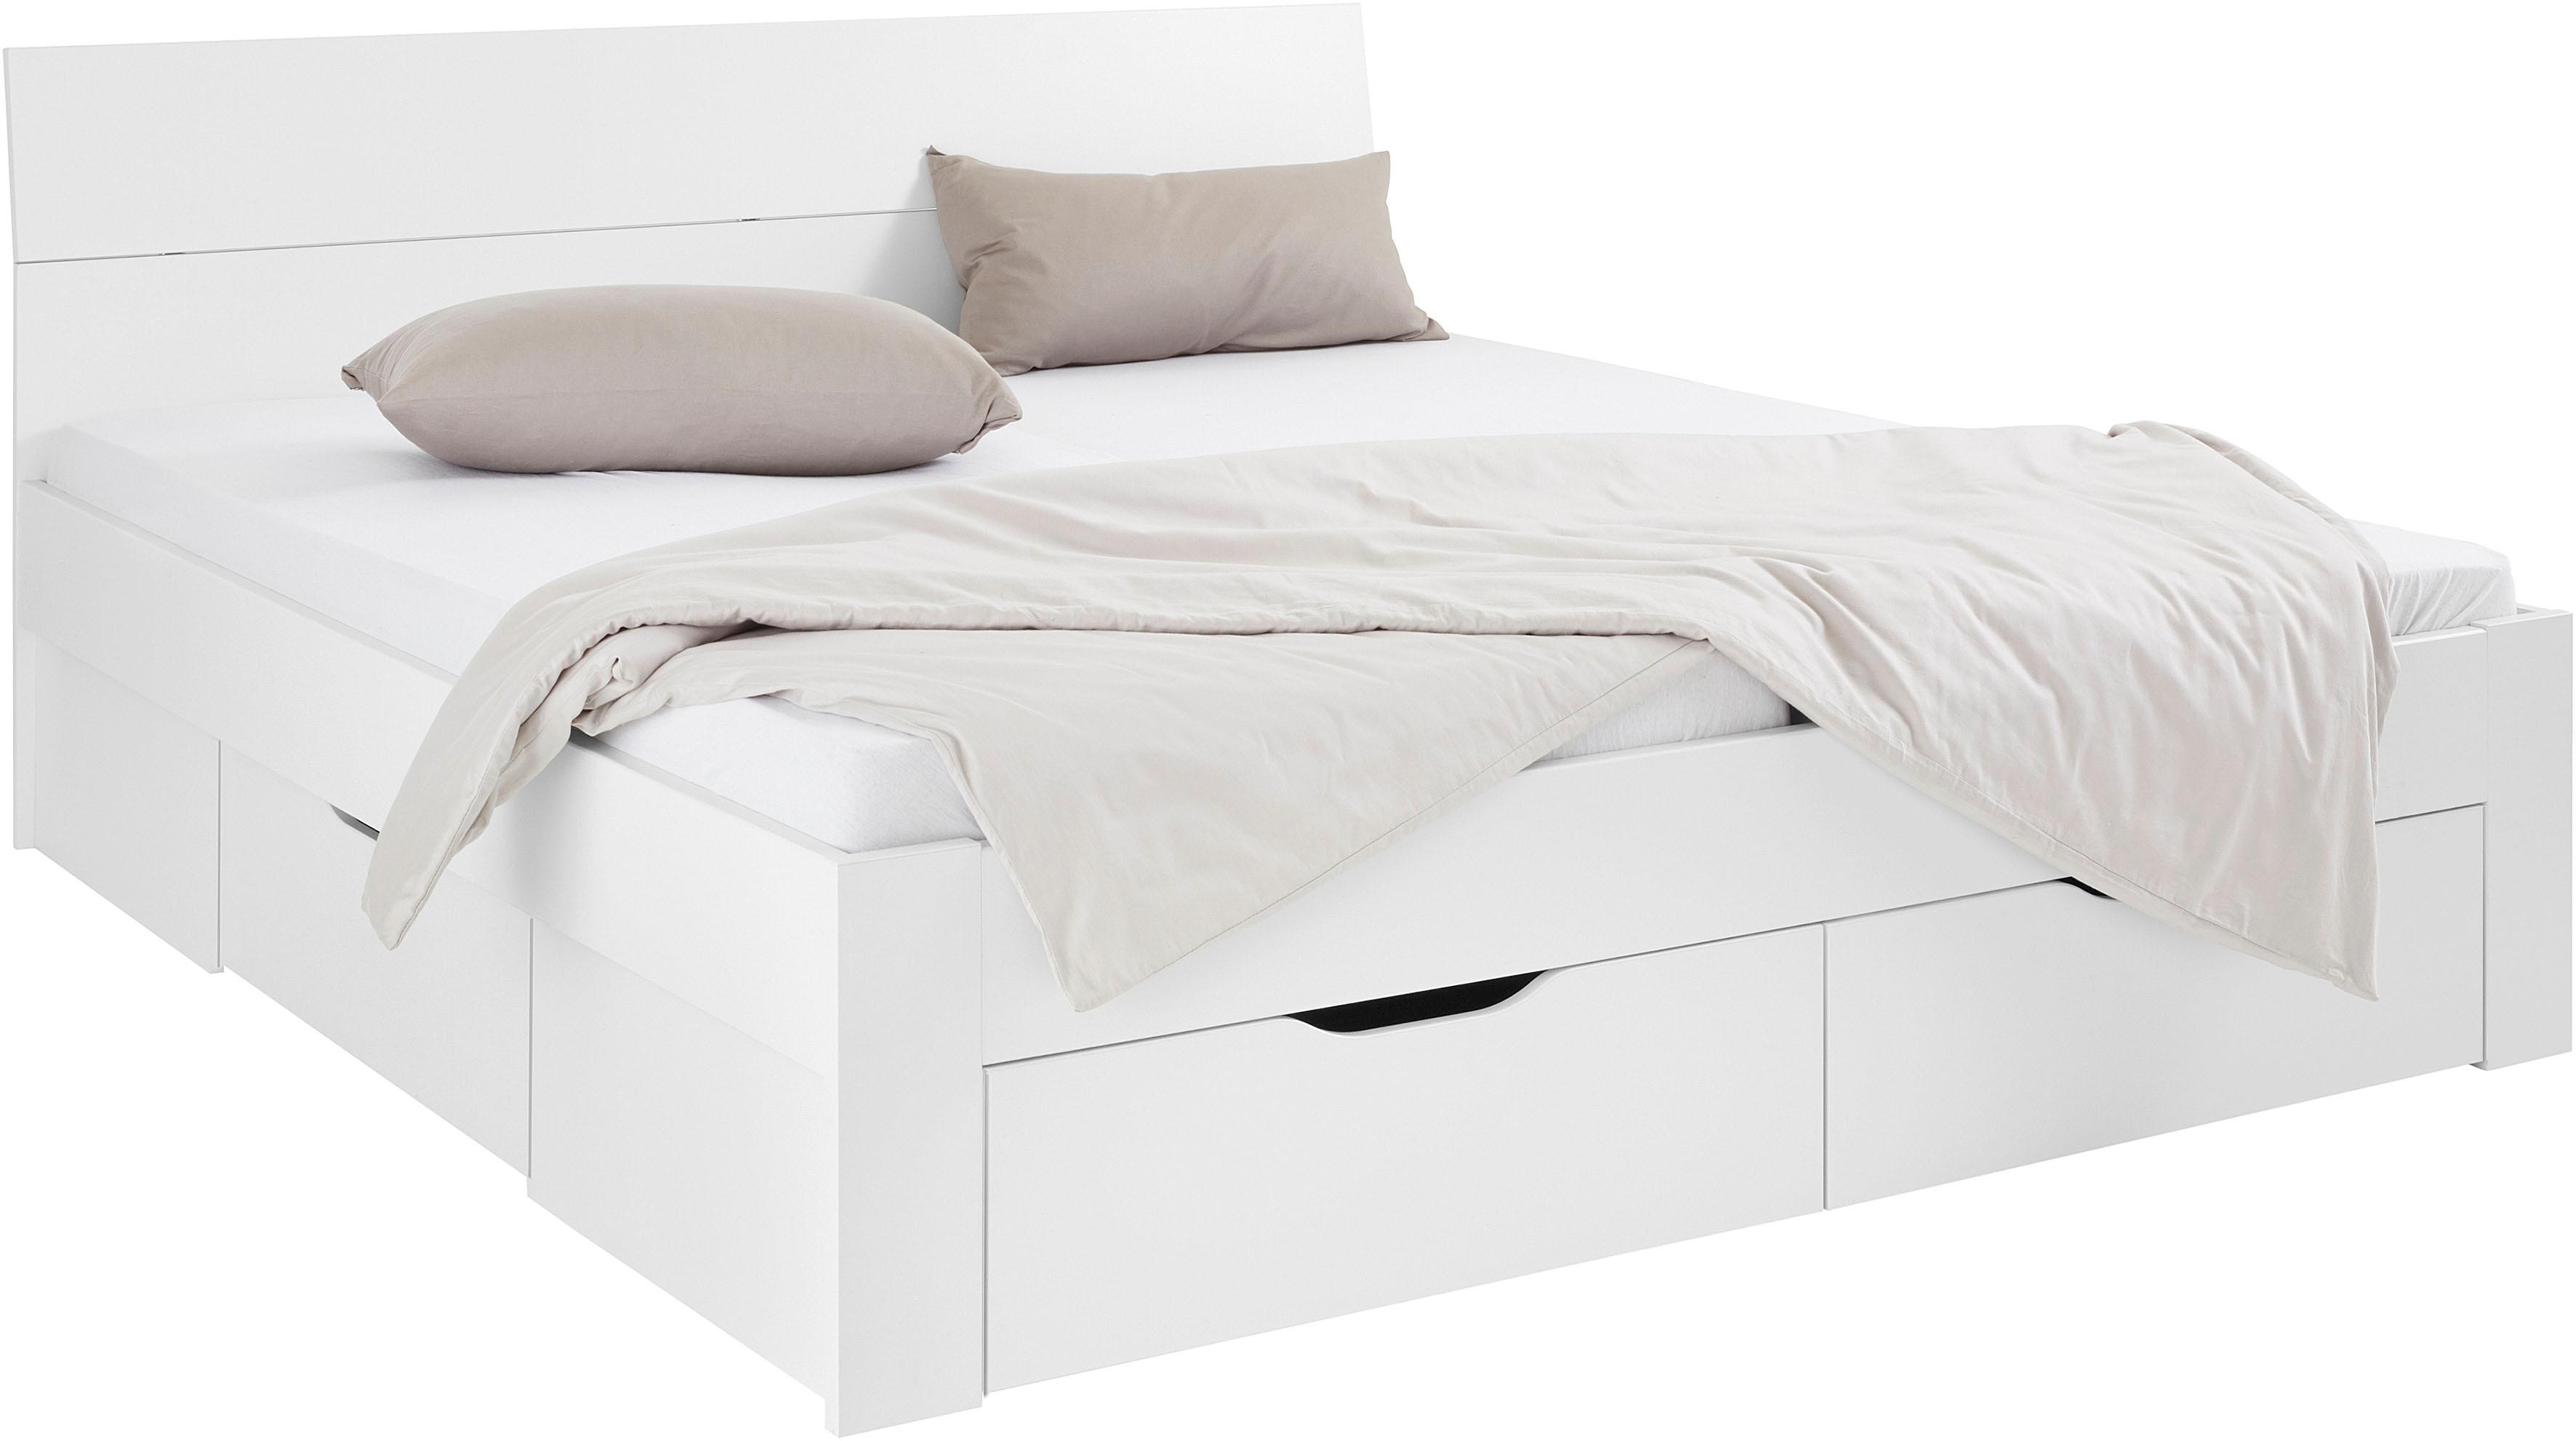 Bett RAUCH "Flexx" Betten Gr. Liegefläche B/L: 180 cm x 200 cm Betthöhe: 41 cm, kein Härtegrad, ohne Matratze, weiß Betten mit Bettkasten